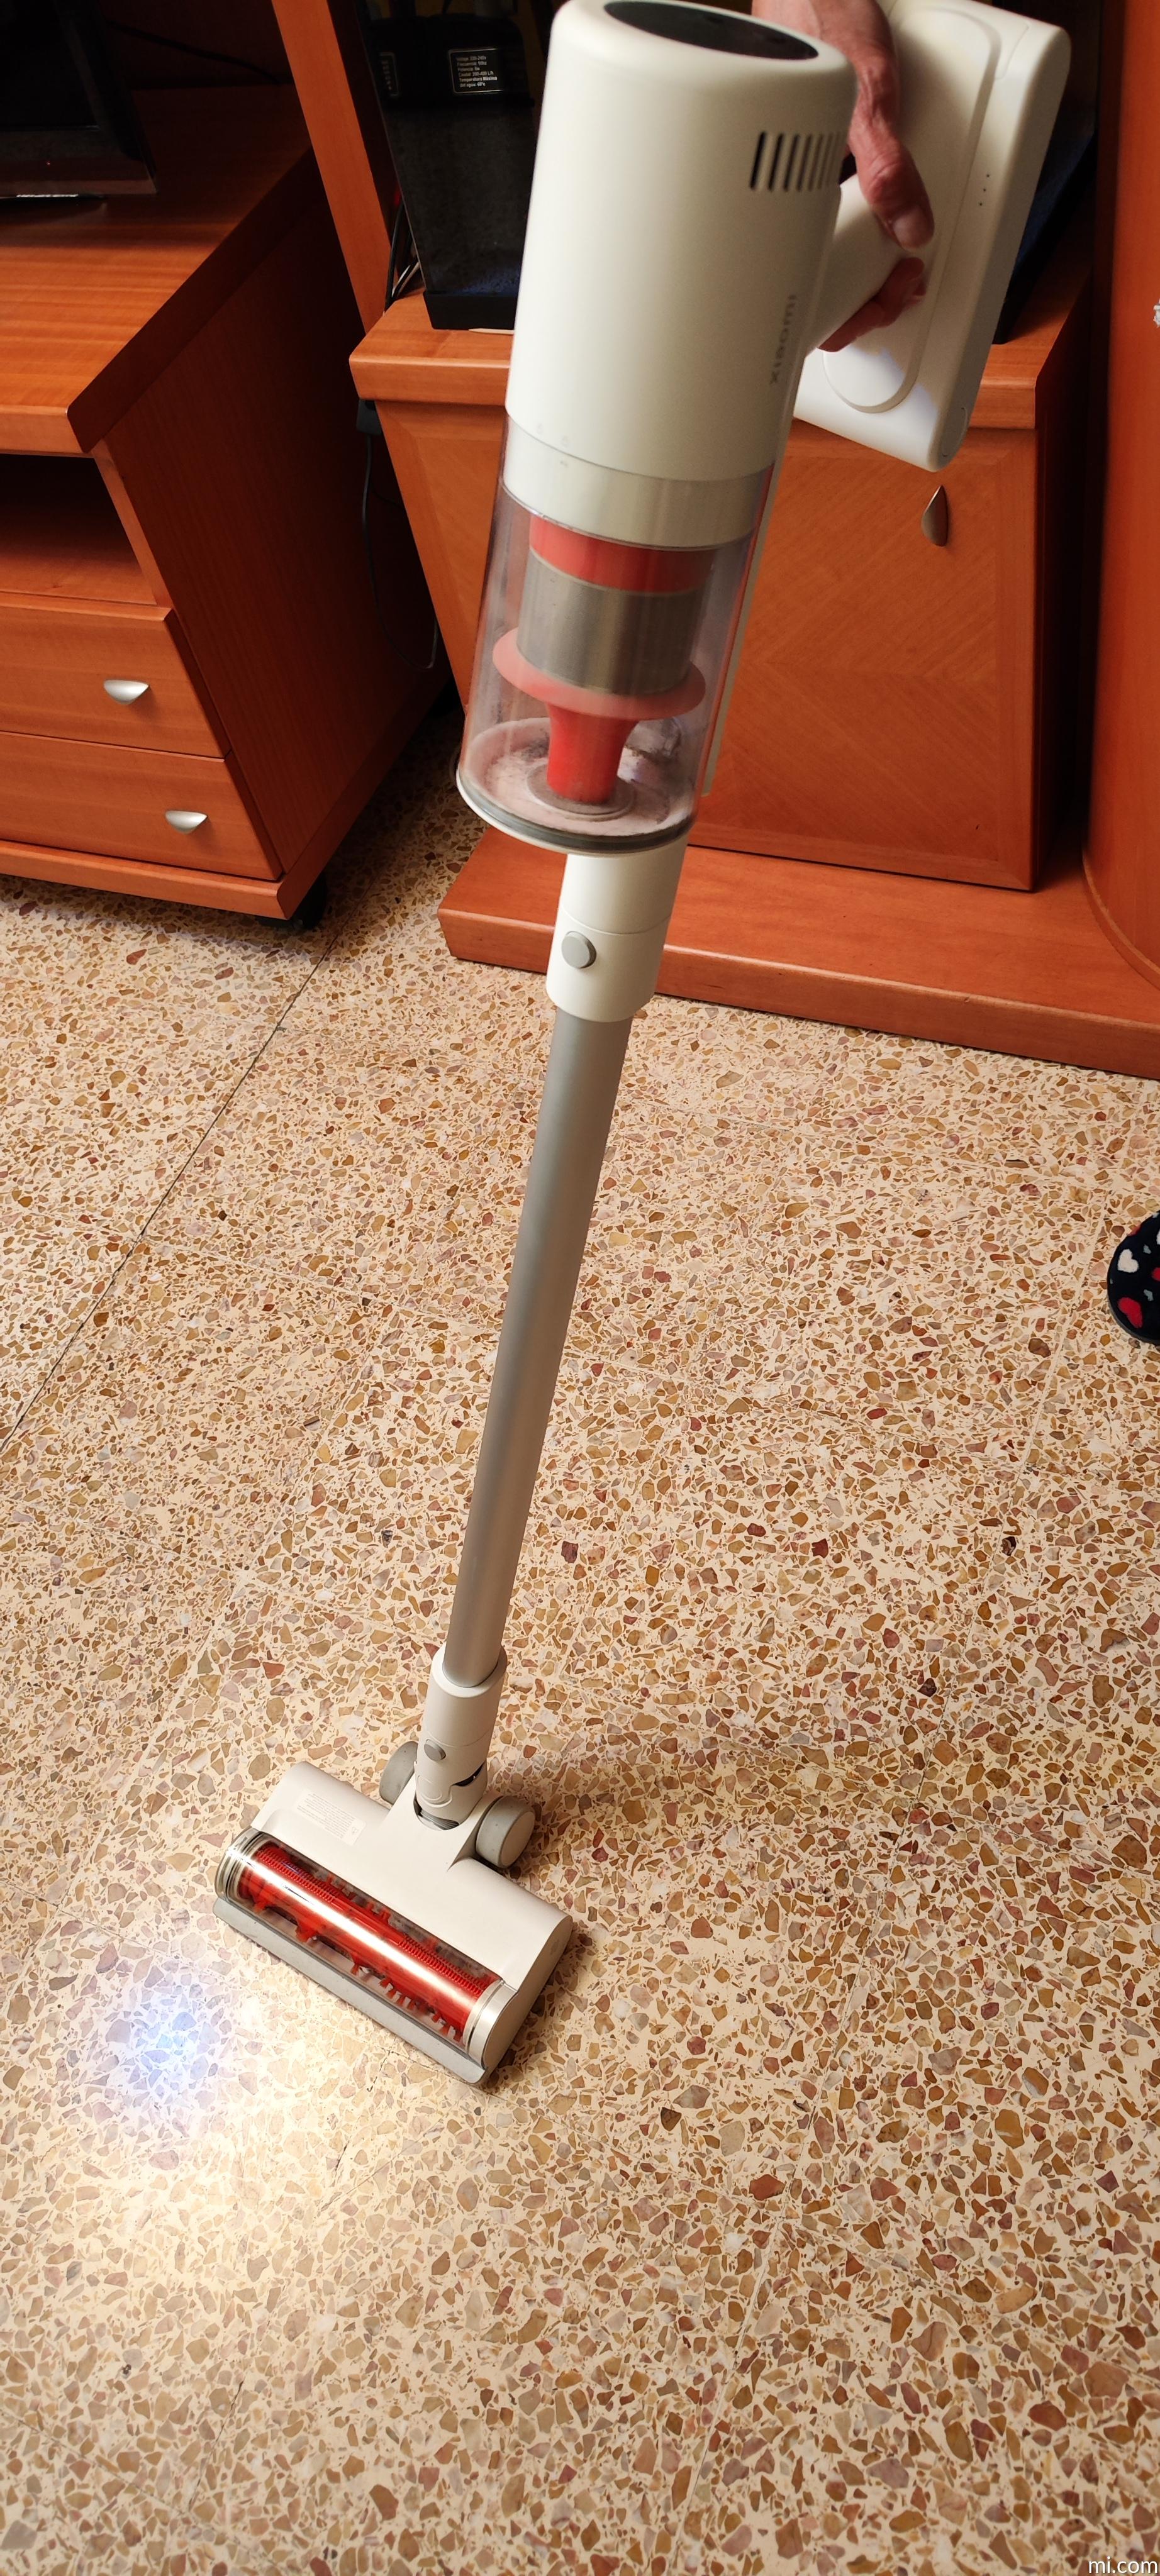 Upright Vacuum Cleaner Xiaomi Vacuum Cleaner G11 - Kontrolsat